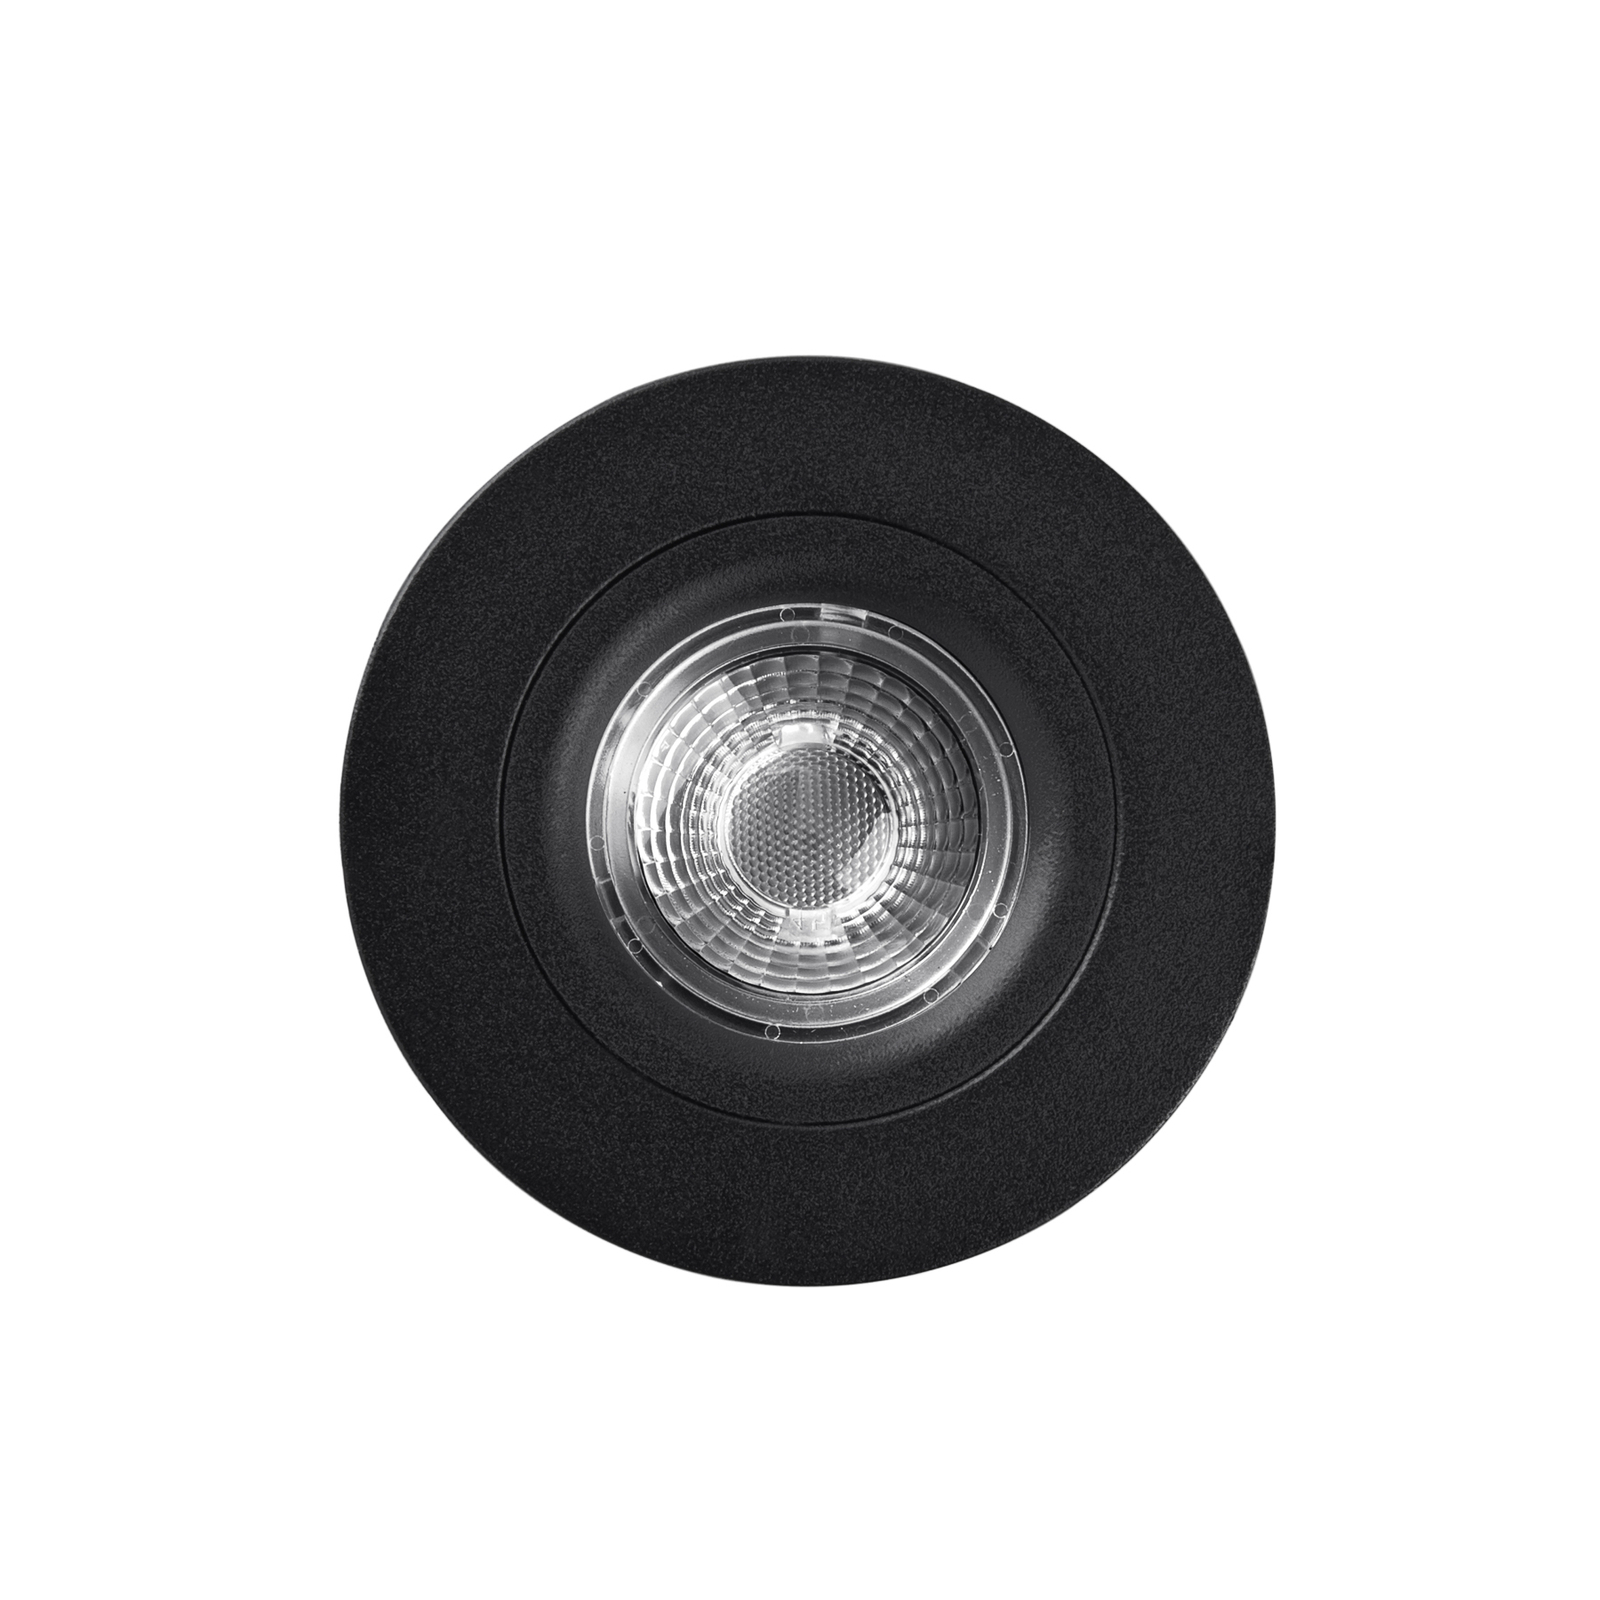 LED plafond inbouwspot DL6809, rond, zwart